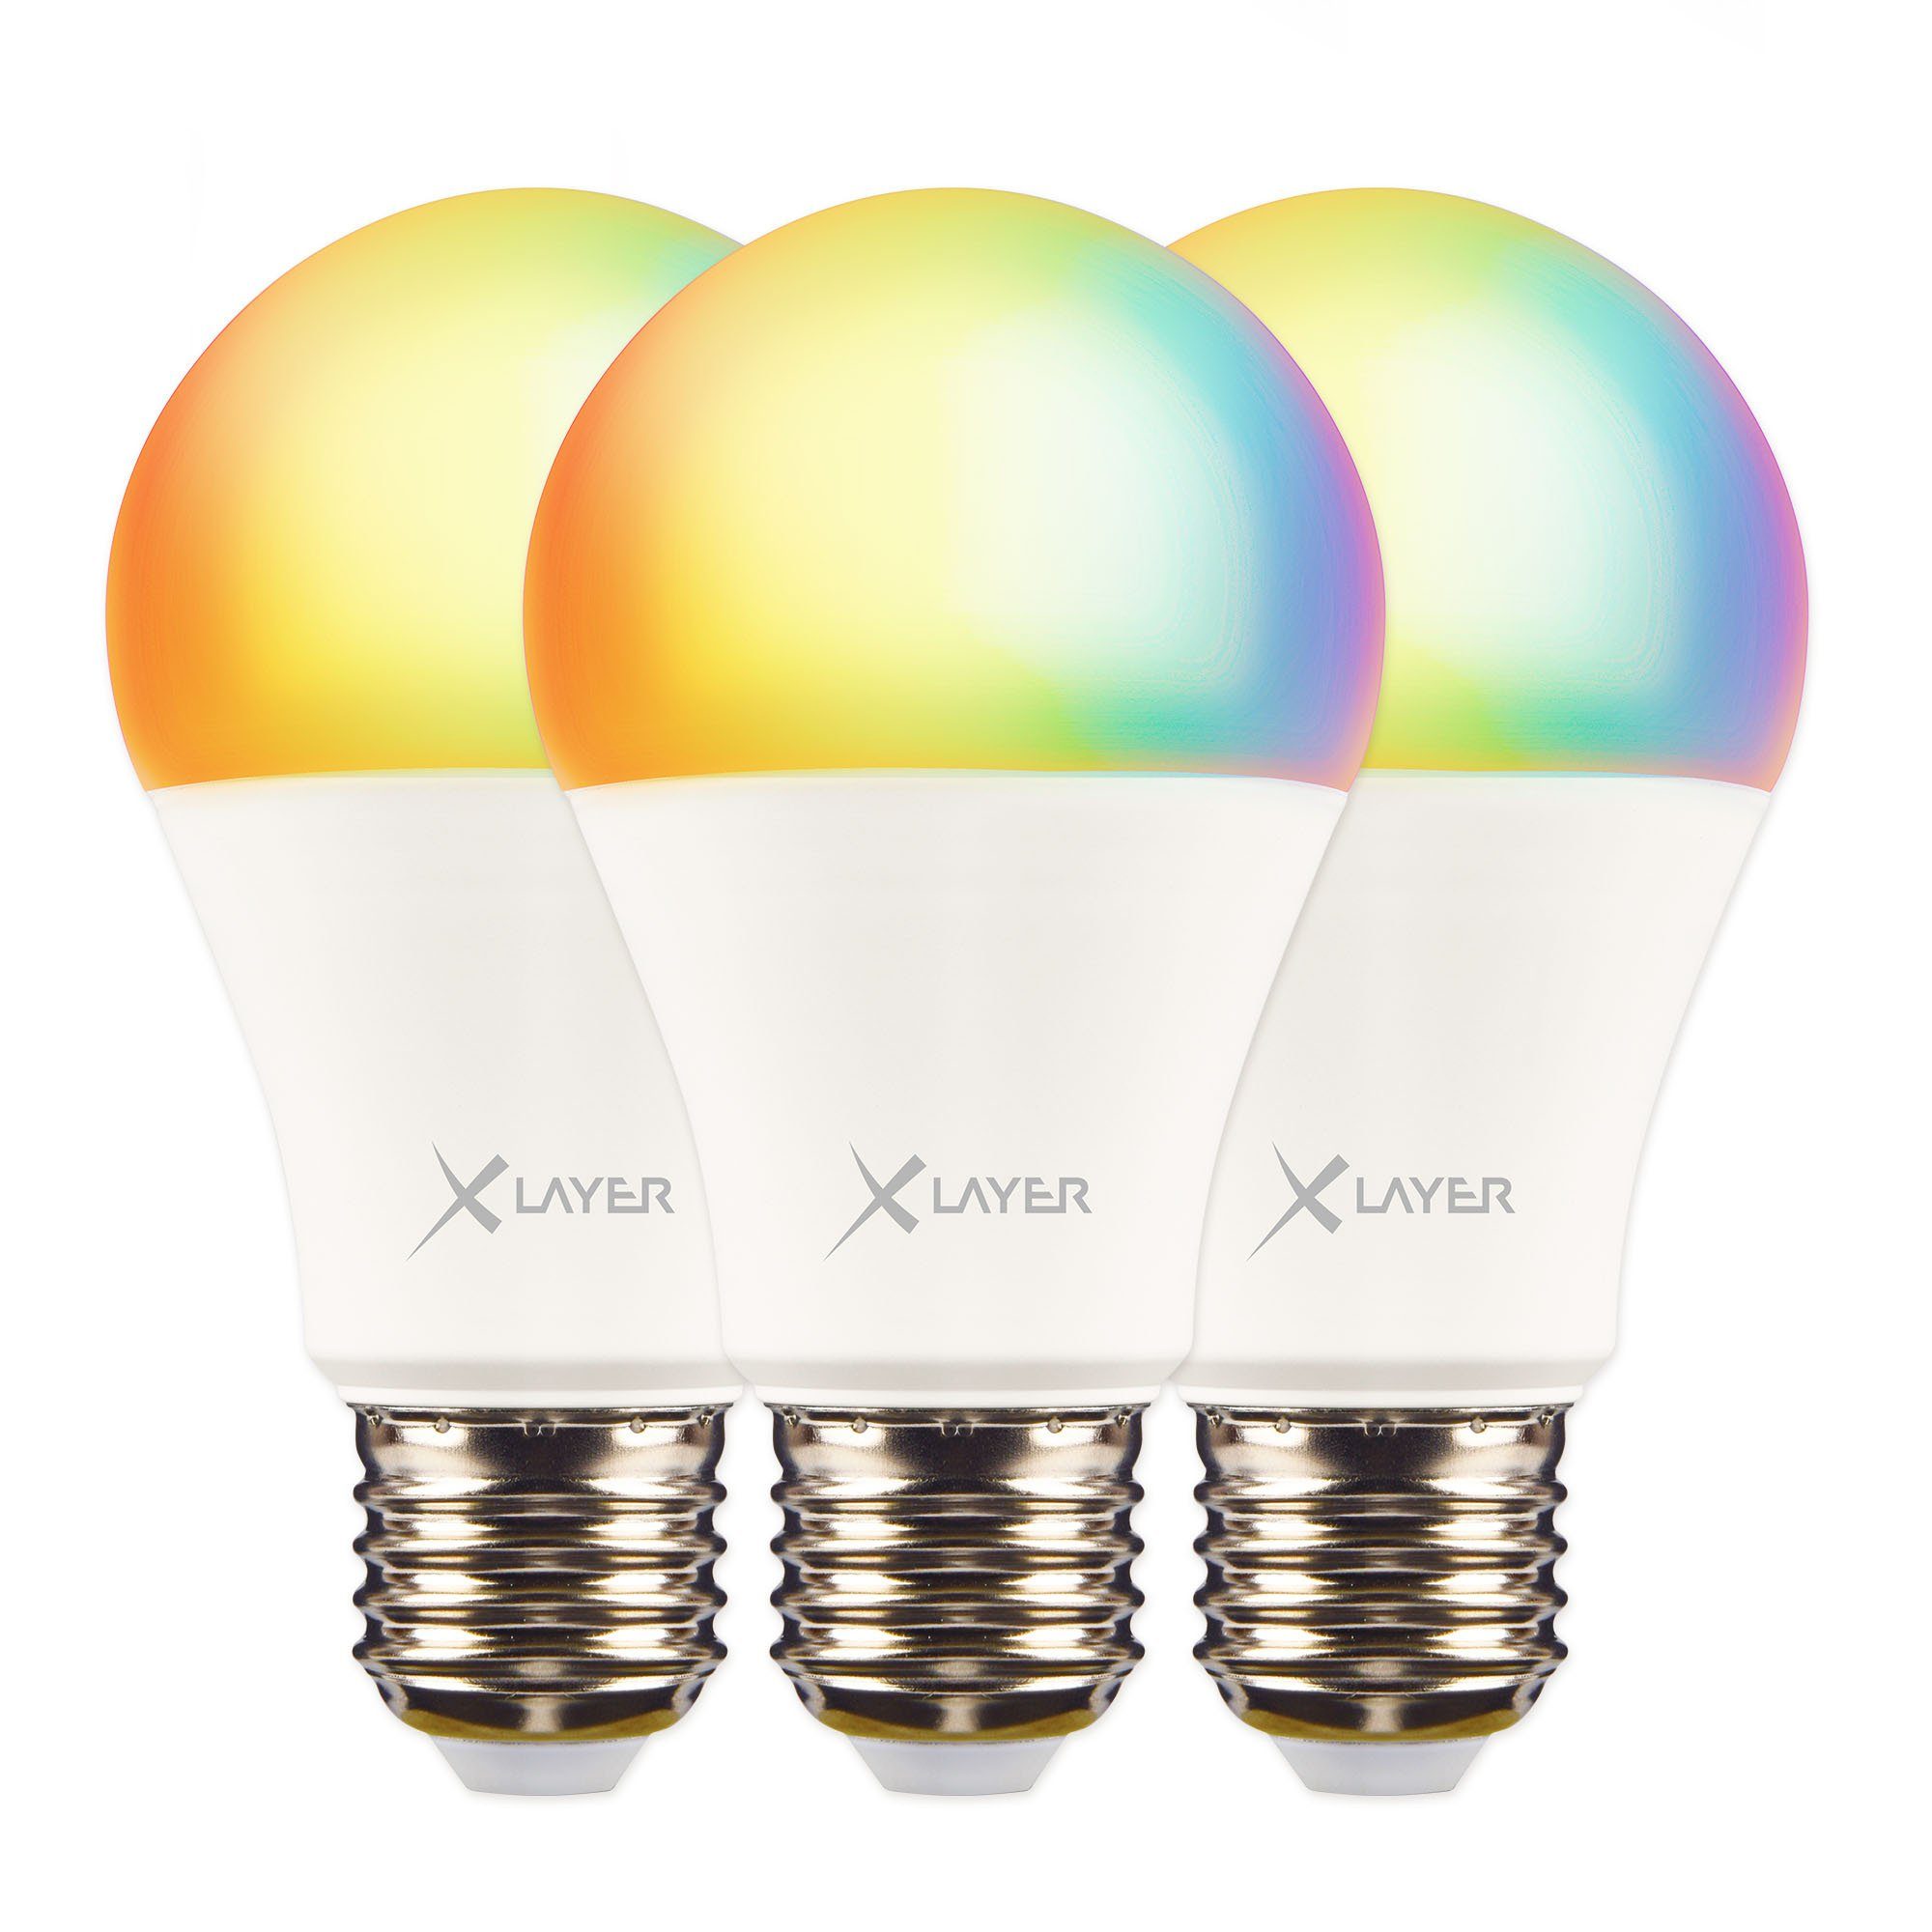 XCOAST GU10 LED-Lampen - 2er Set für individuelle Lichtsteuerung